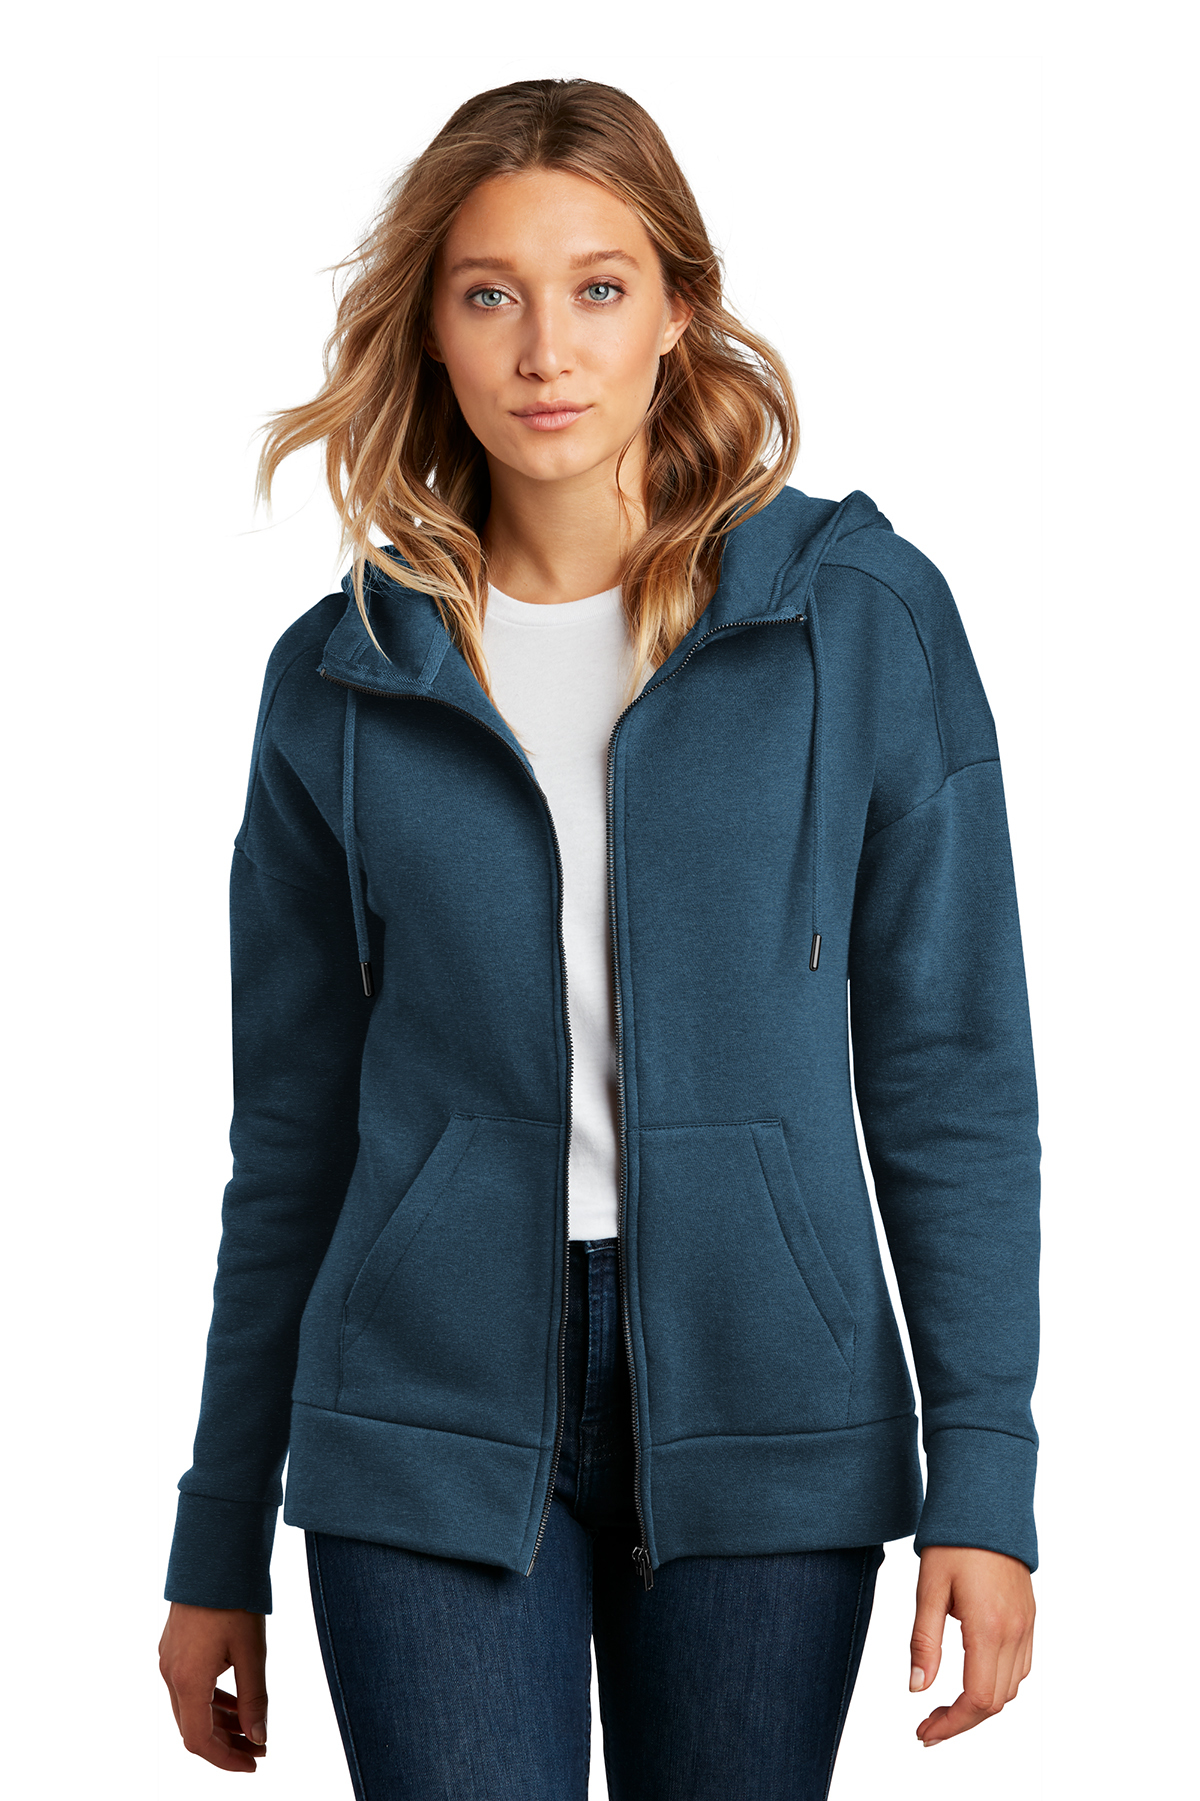 BETTERCHIC Women's Hooded Sweatshirt Casual Soft Brushed Fleece Hoody Drop Shoulder Full Zip Up Hoodie Size S-2xl